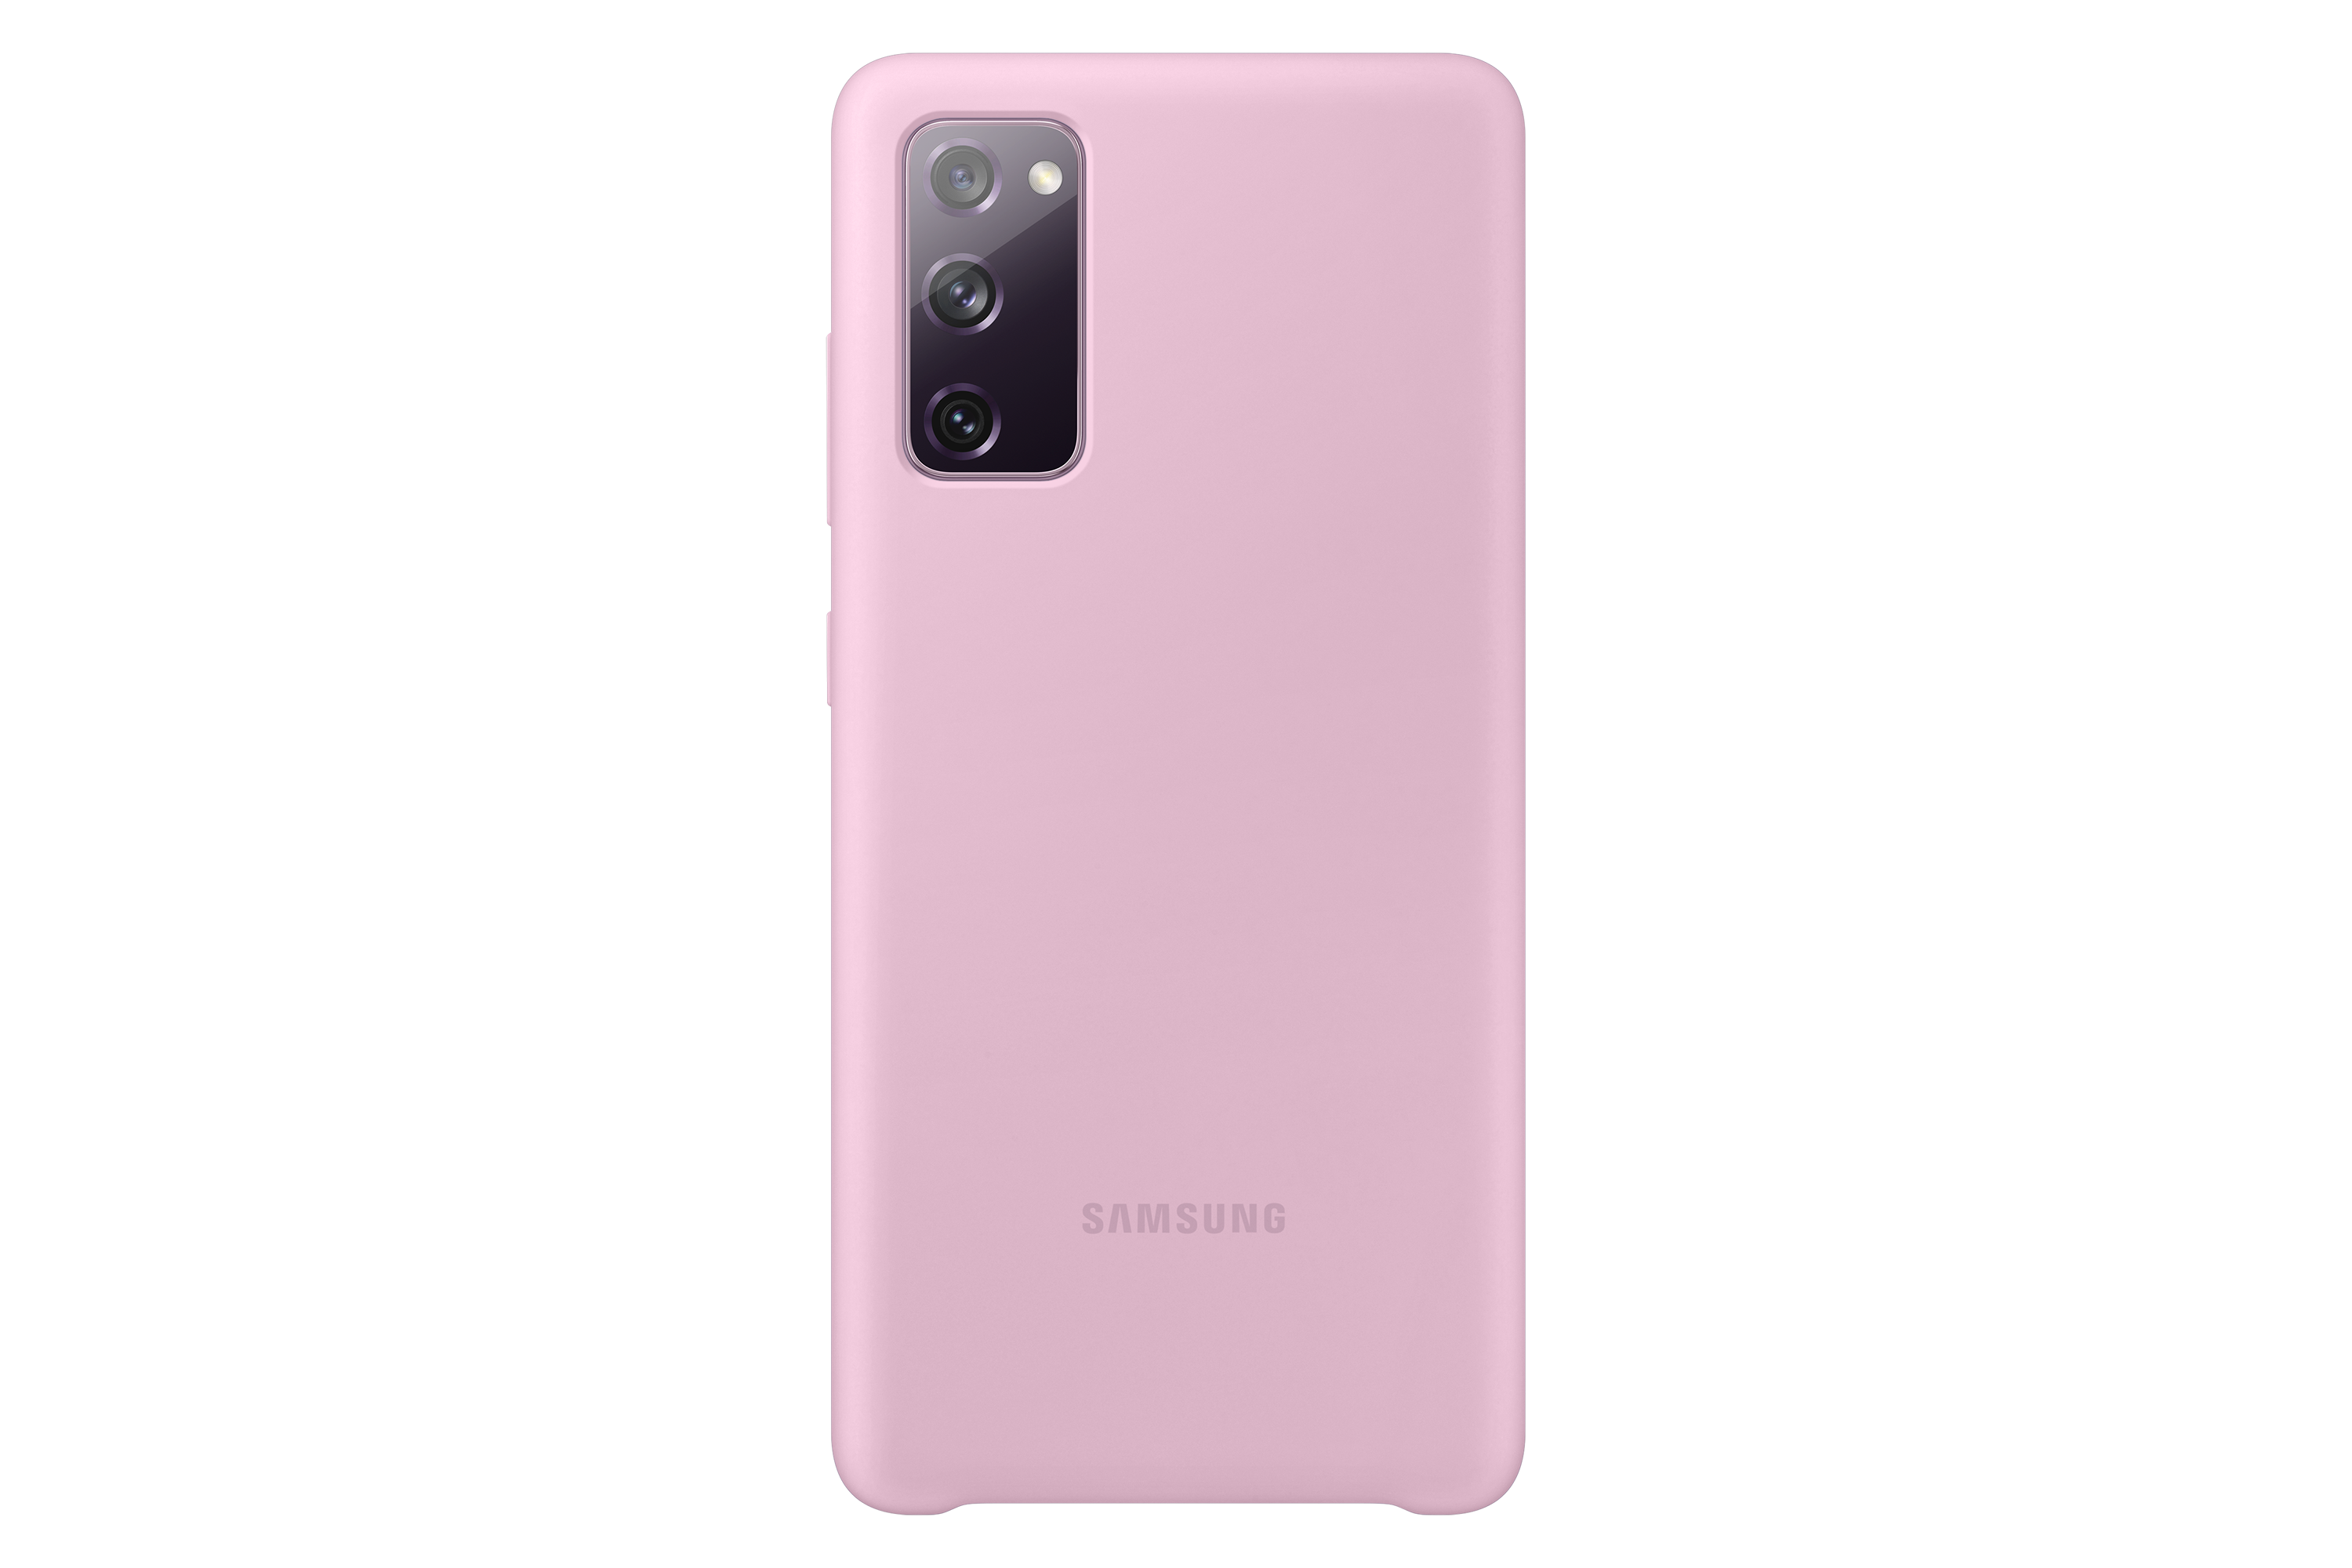 Acheter Coque de protection Samsung Galaxy S20 FE Violet - Coque